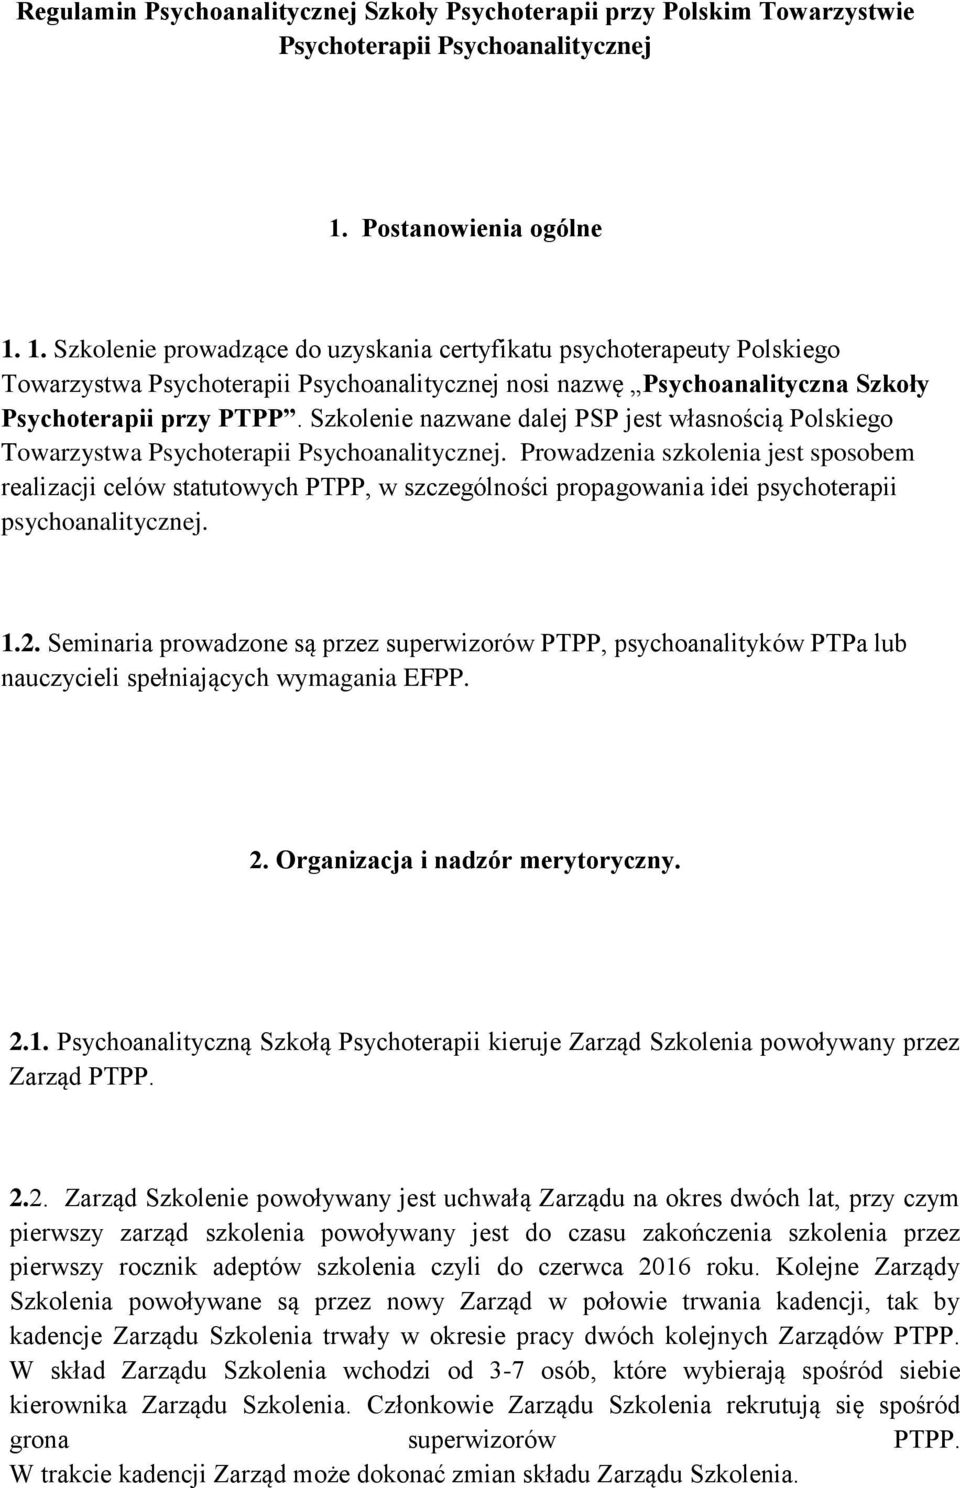 1. Szkolenie prowadzące do uzyskania certyfikatu psychoterapeuty Polskiego Towarzystwa Psychoterapii Psychoanalitycznej nosi nazwę Psychoanalityczna Szkoły Psychoterapii przy PTPP.